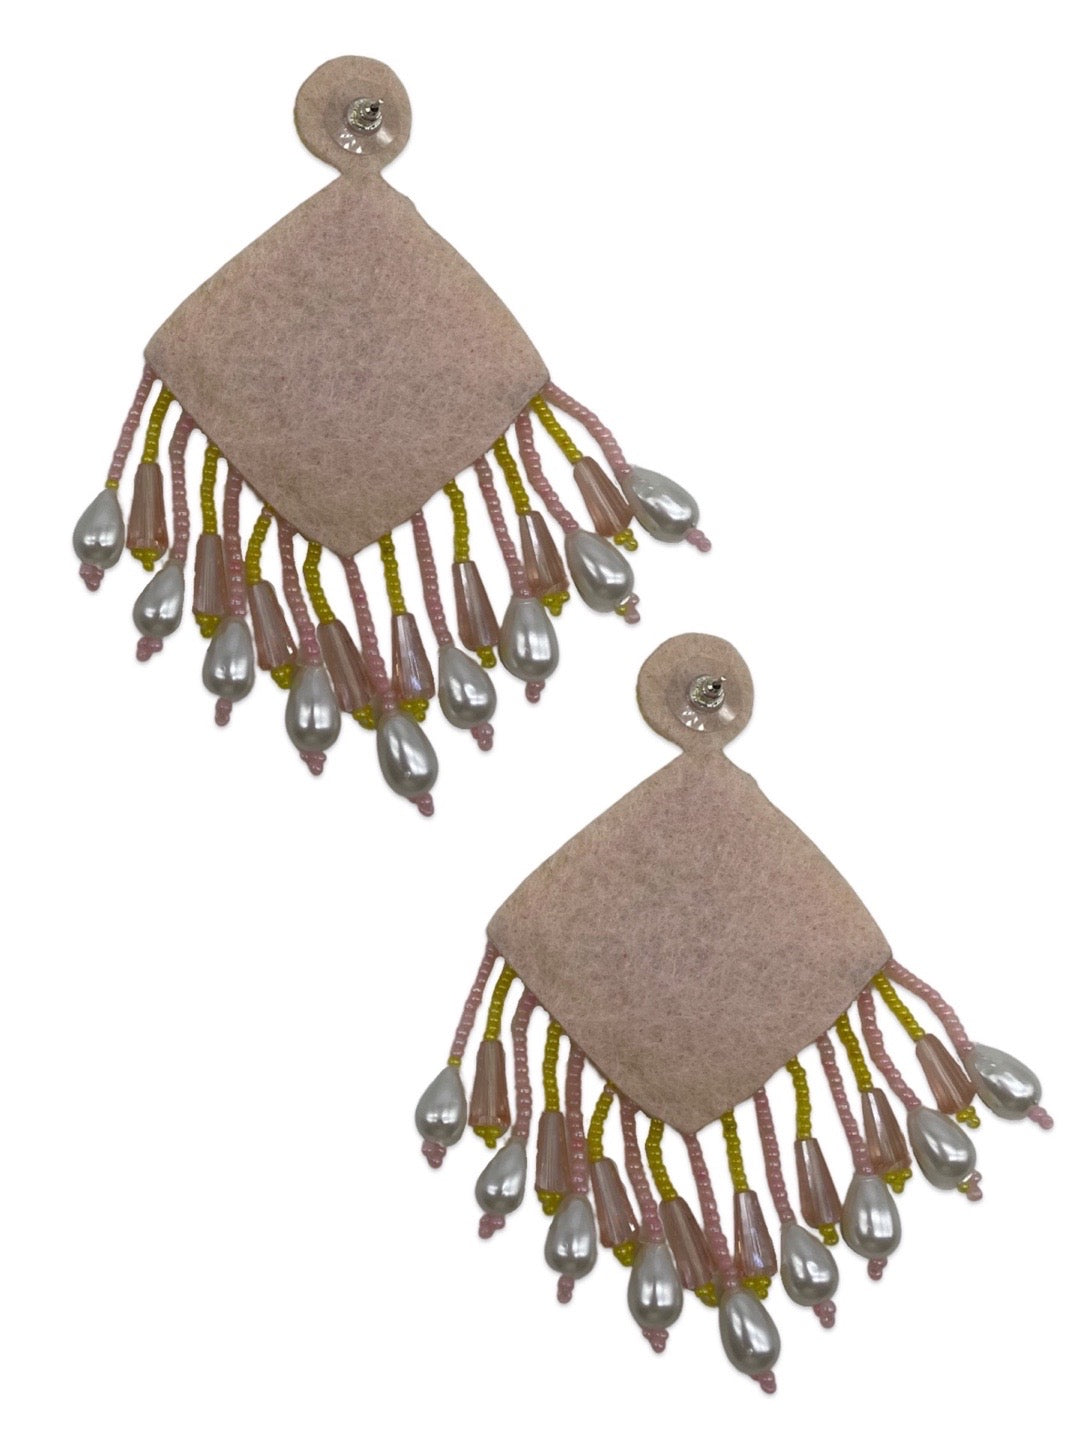 earrings design